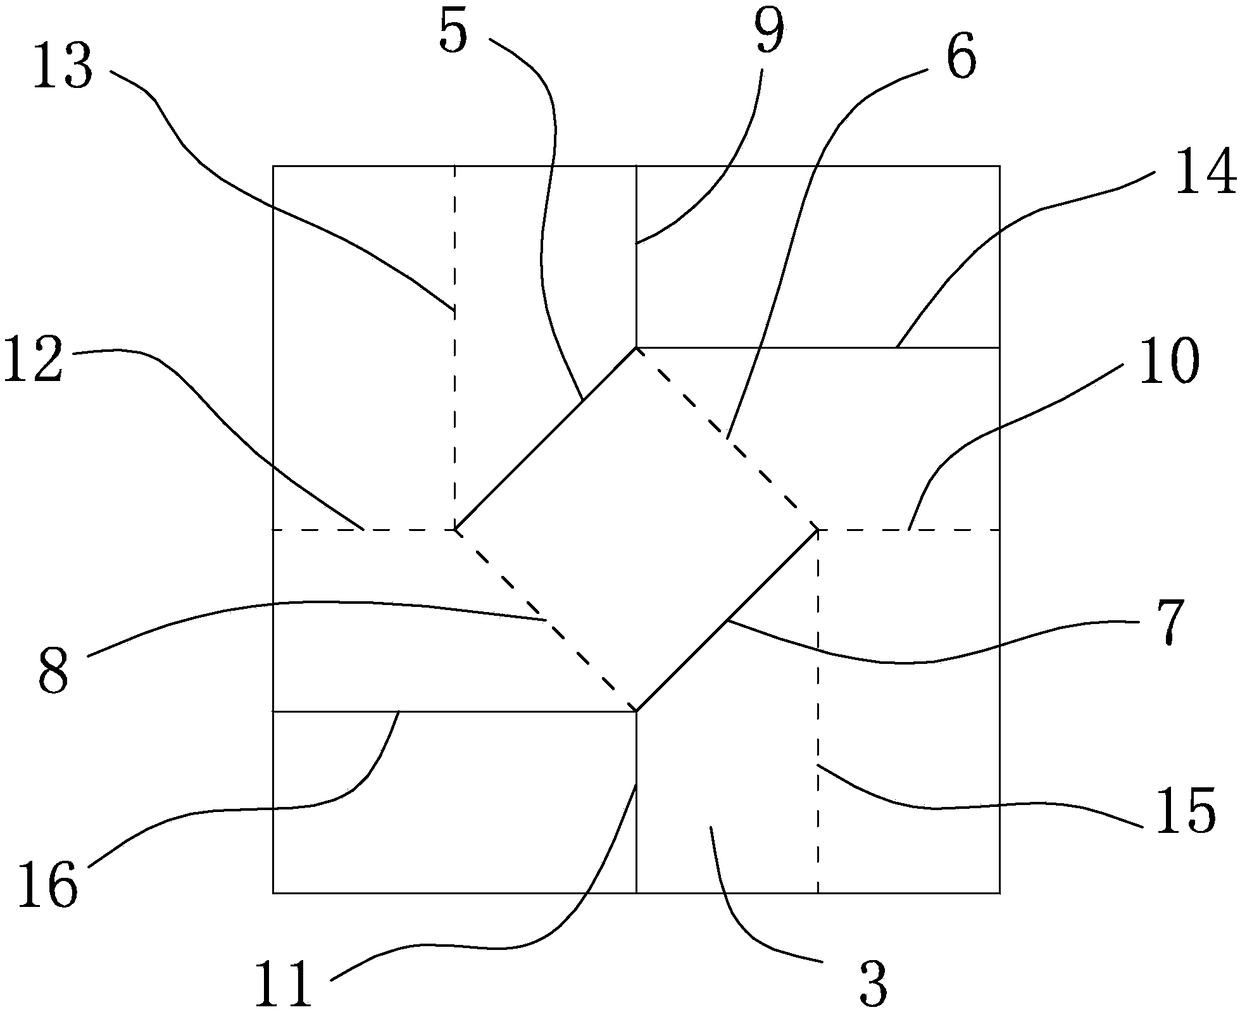 Unfoldingantenna basic unit, unfoldingantenna and folding method based on origami